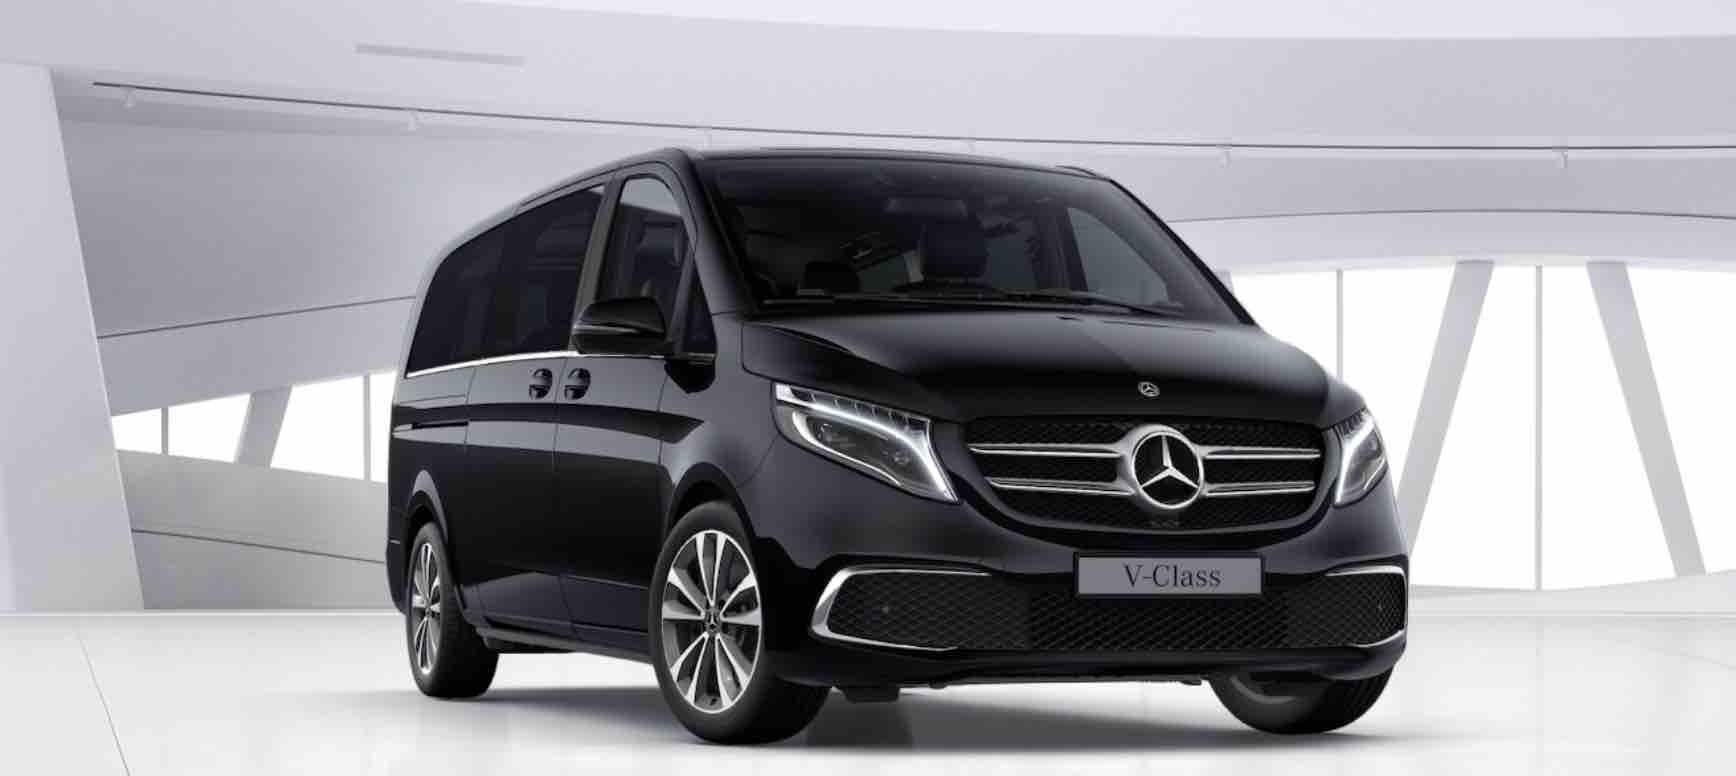 Luxury Chauffeur Car Service Milan – V Class Minivan